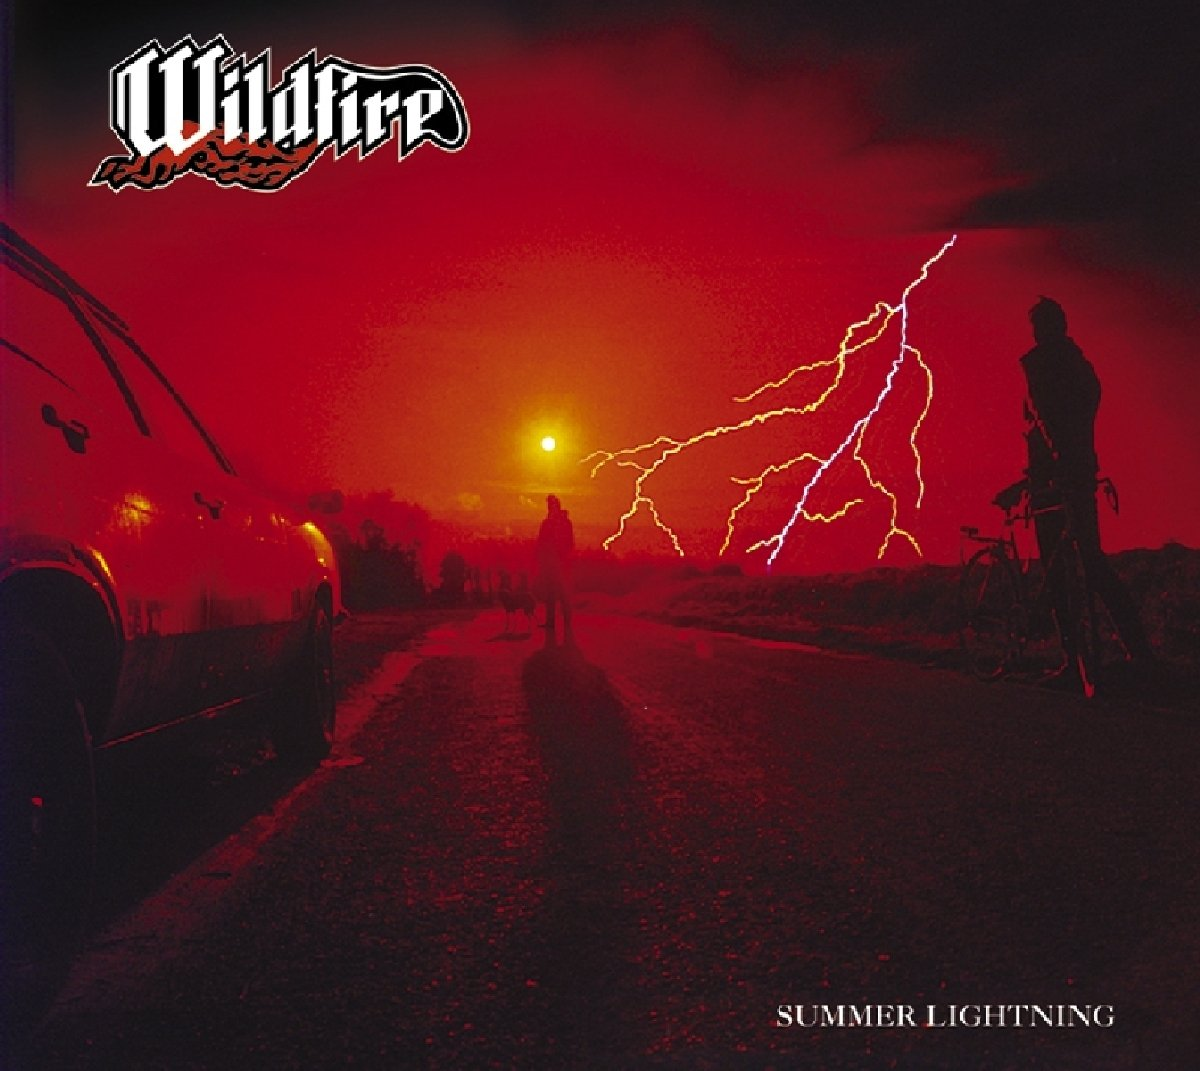 The lightning last night. Wildfire Band. Wildfire обложка. Wildfire [uk] - Summer Lightning (1984). Wildfire певец Killboy.